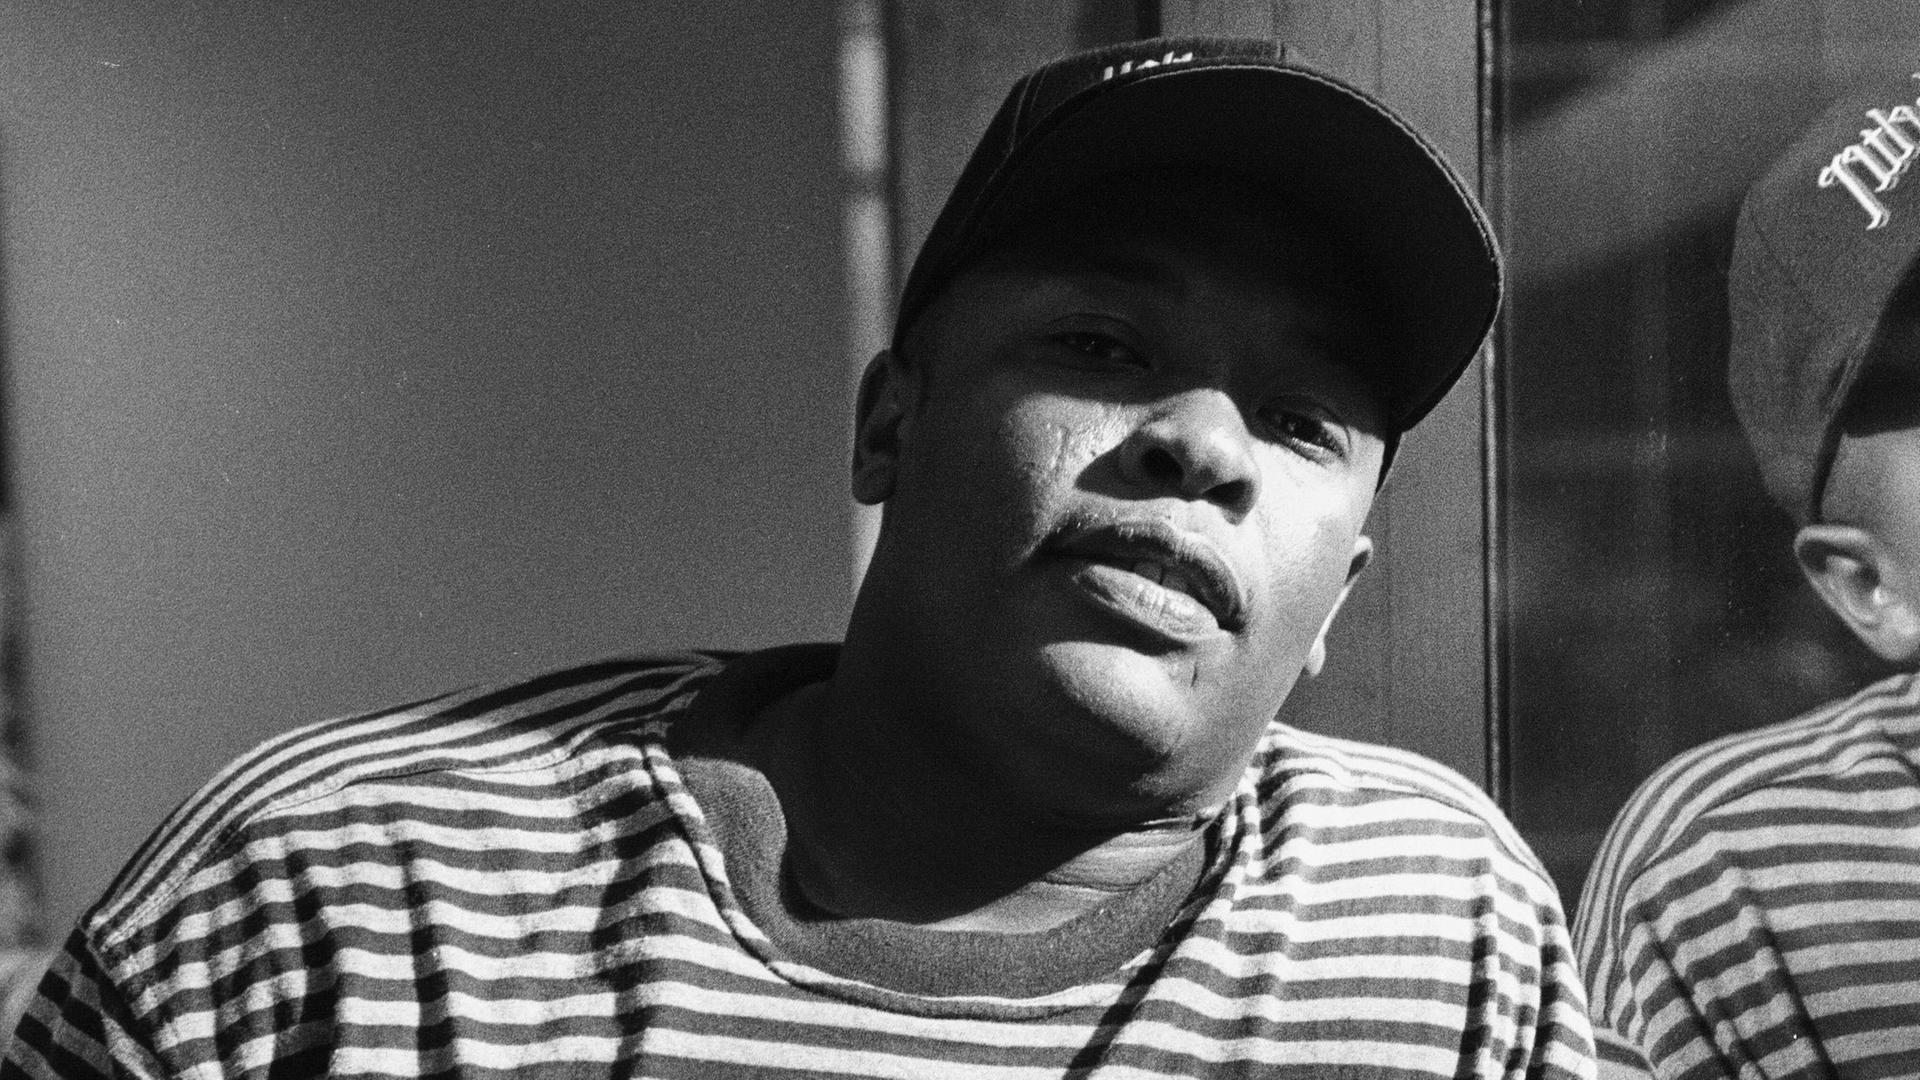 Schwarzweißfoto von Dr. Dre aus den 1990er Jahren. Er steht im Ringelshirt und mit Basecap an die Glaswand eines Tonstudios gelehnt und schaut direkt in die Kamera.